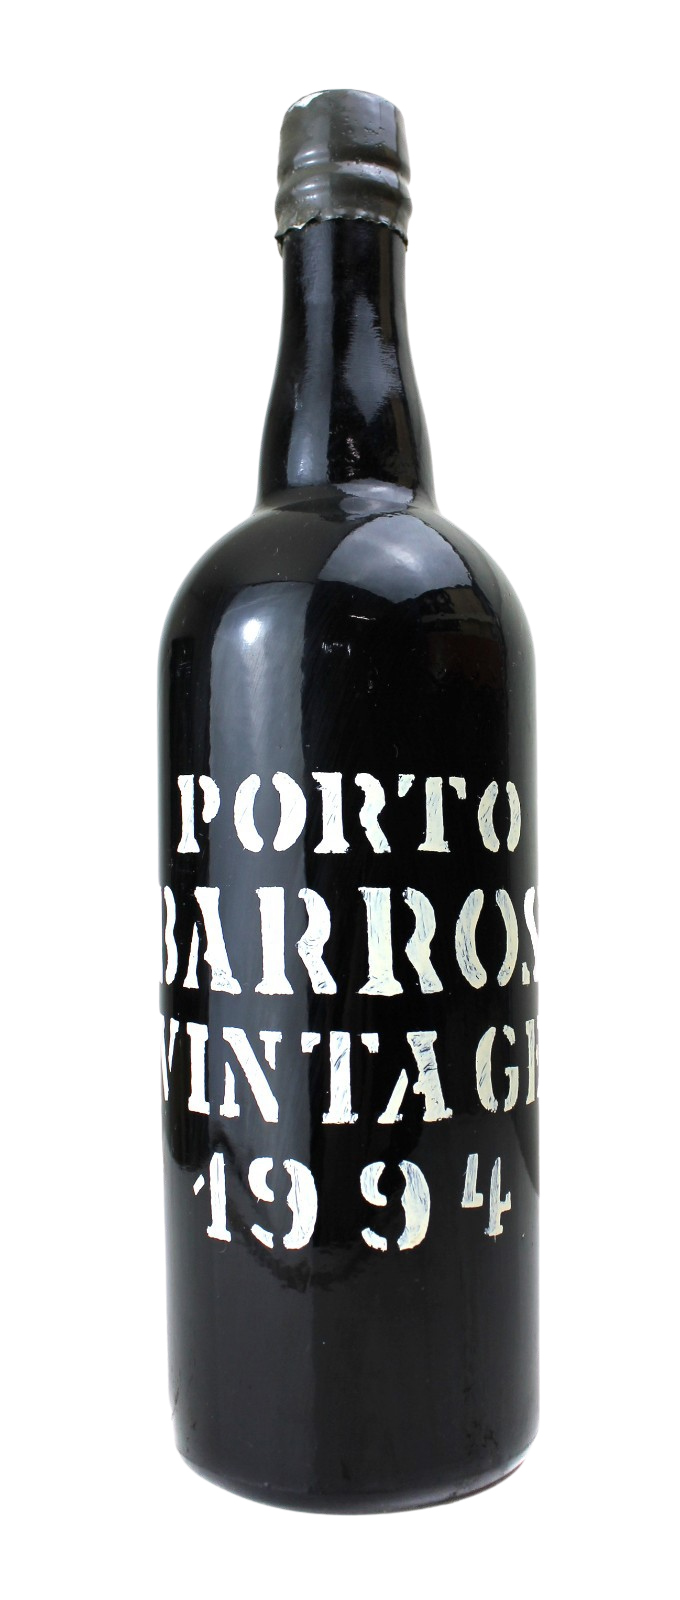 1994 Barros Vintage-Port